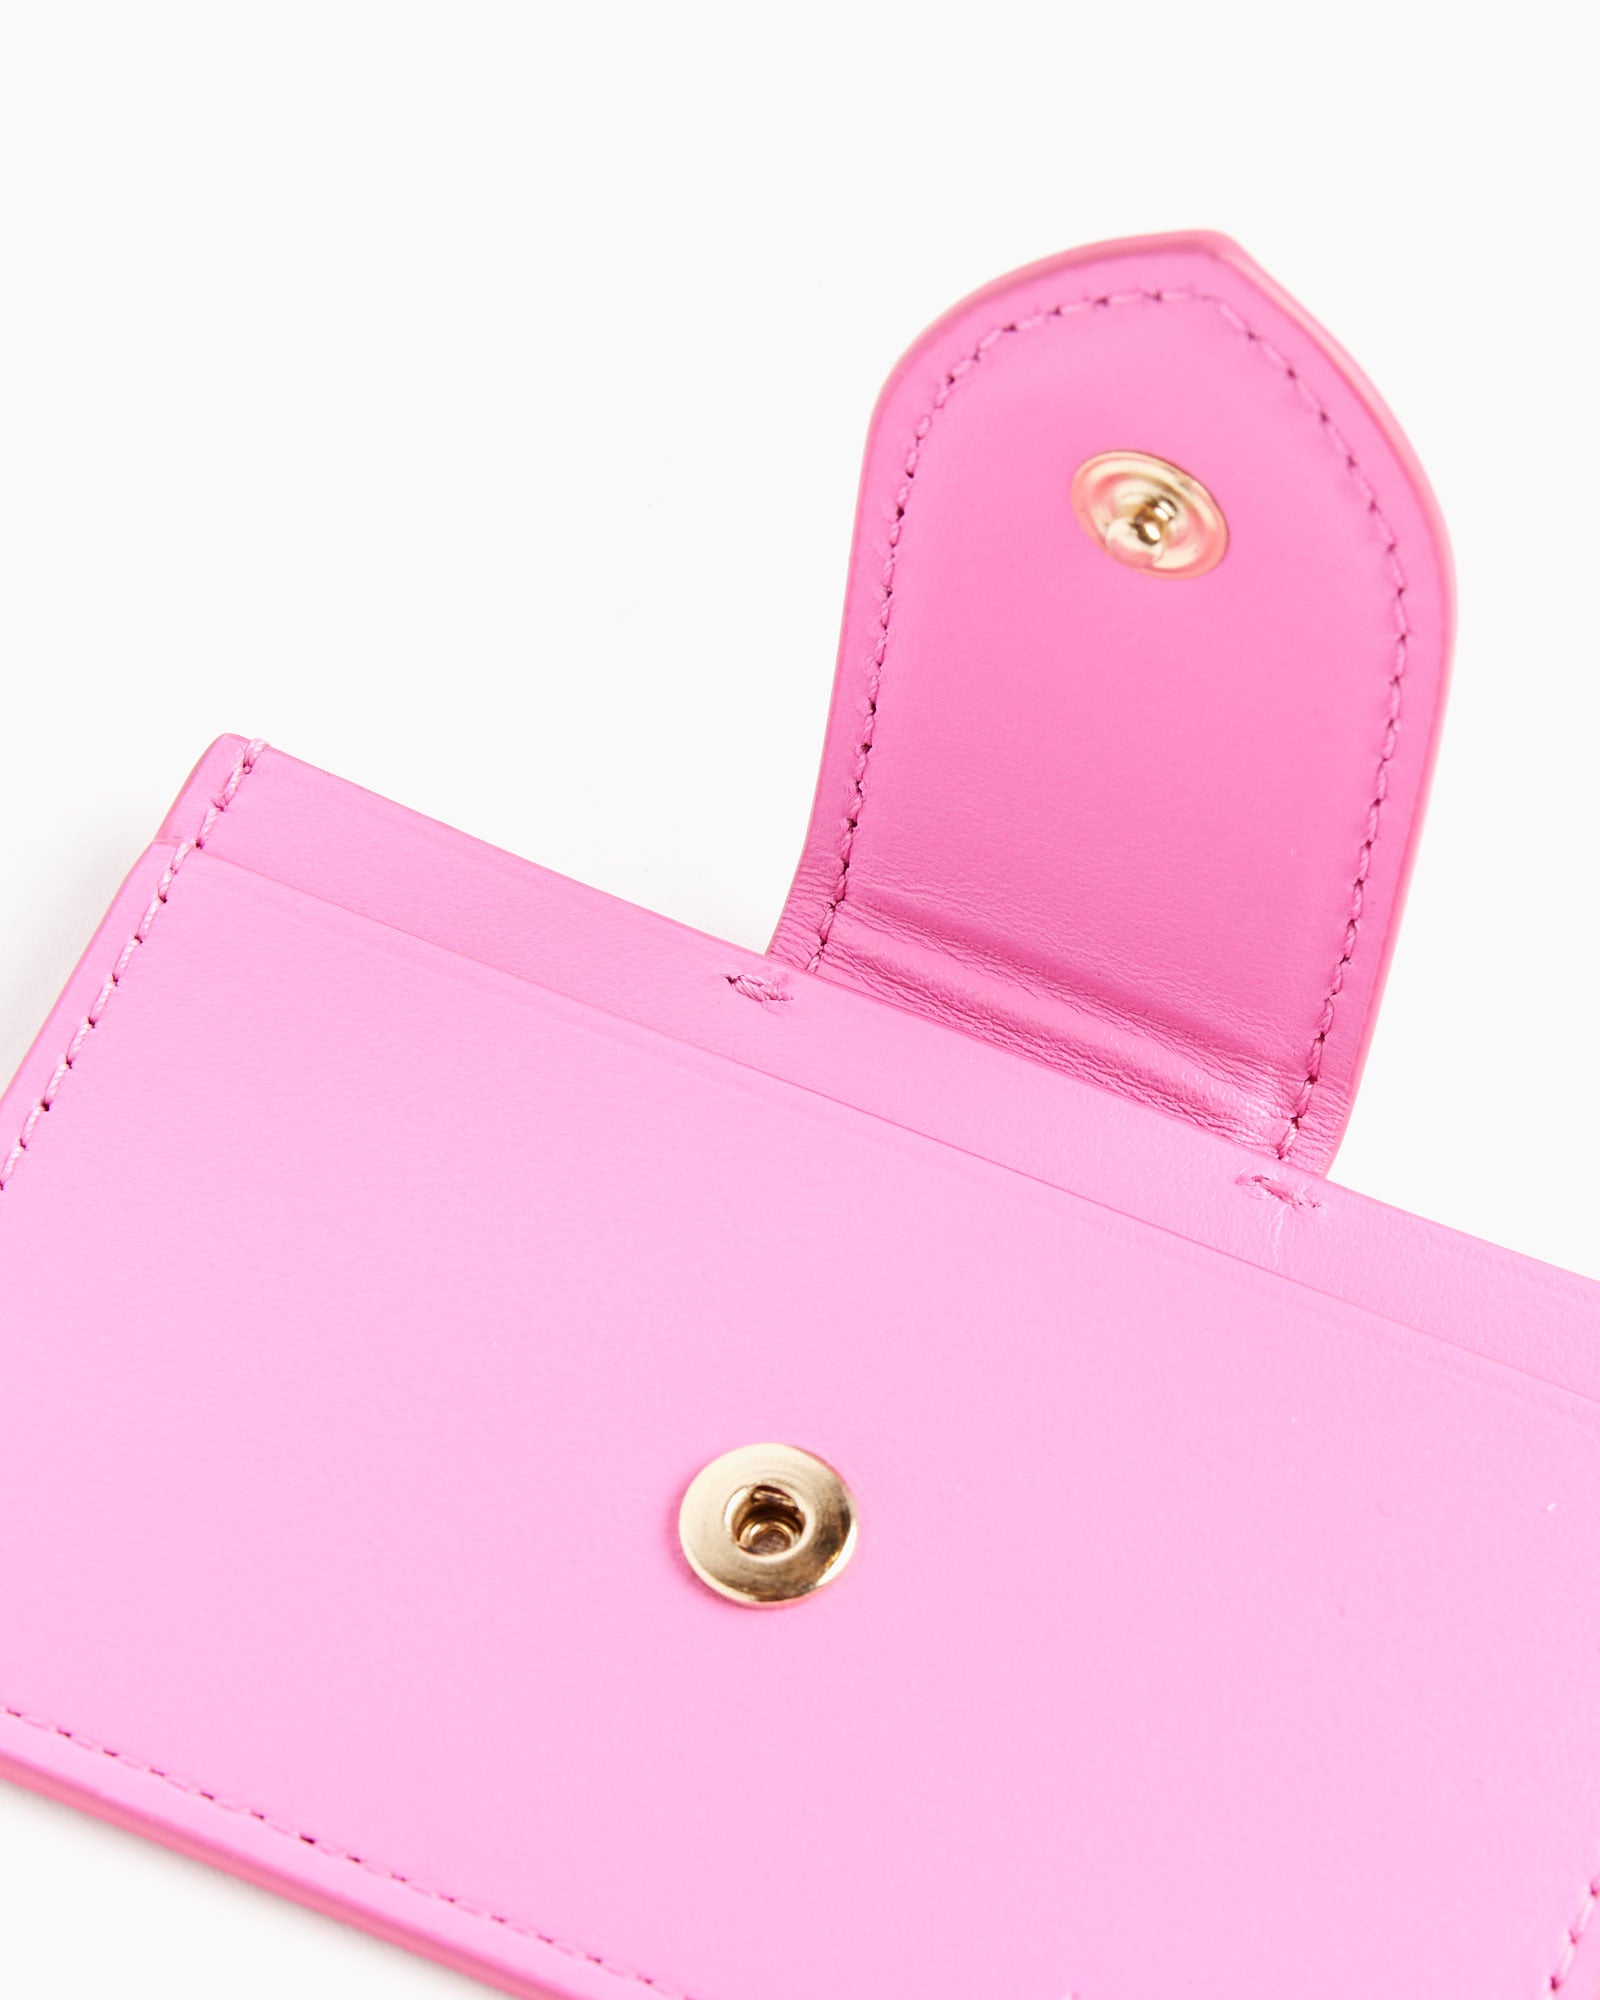 Le Porte-Carte Bambino Bag in Neon Pink